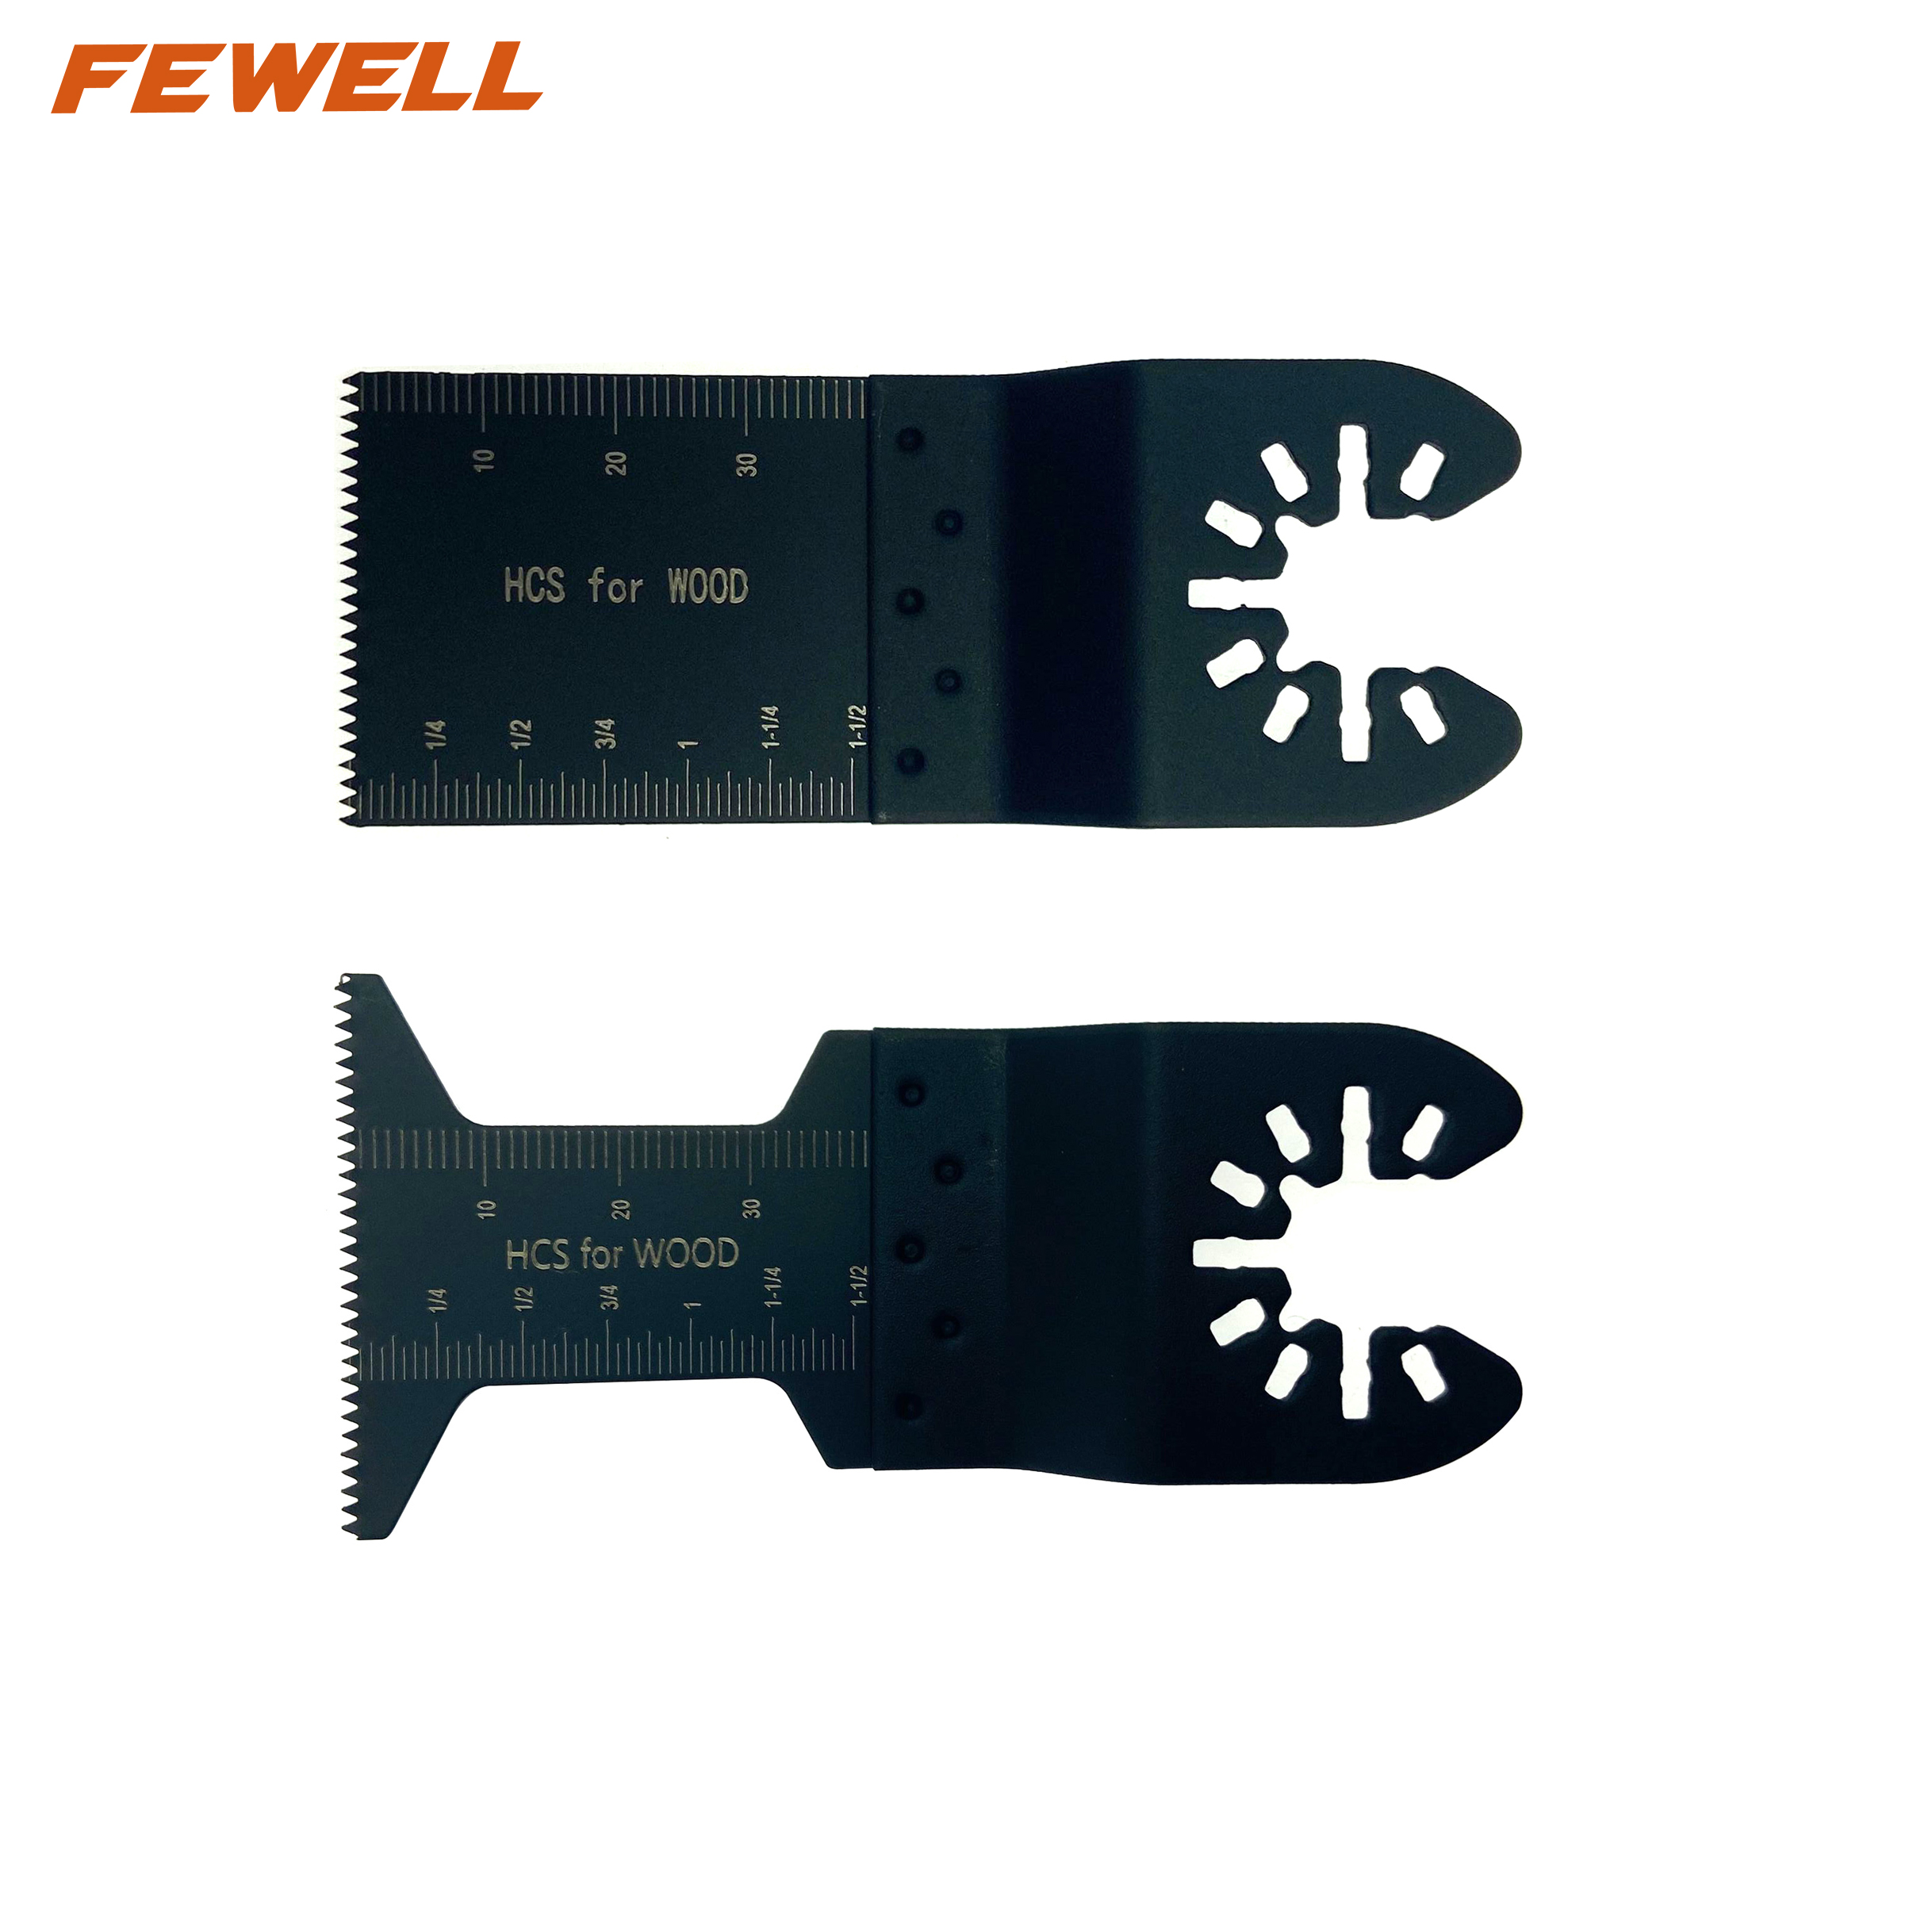 Hojas de sierra multiherramienta oscilantes Starlock bimetálicas HSS de 35 mm para corte de madera y metal